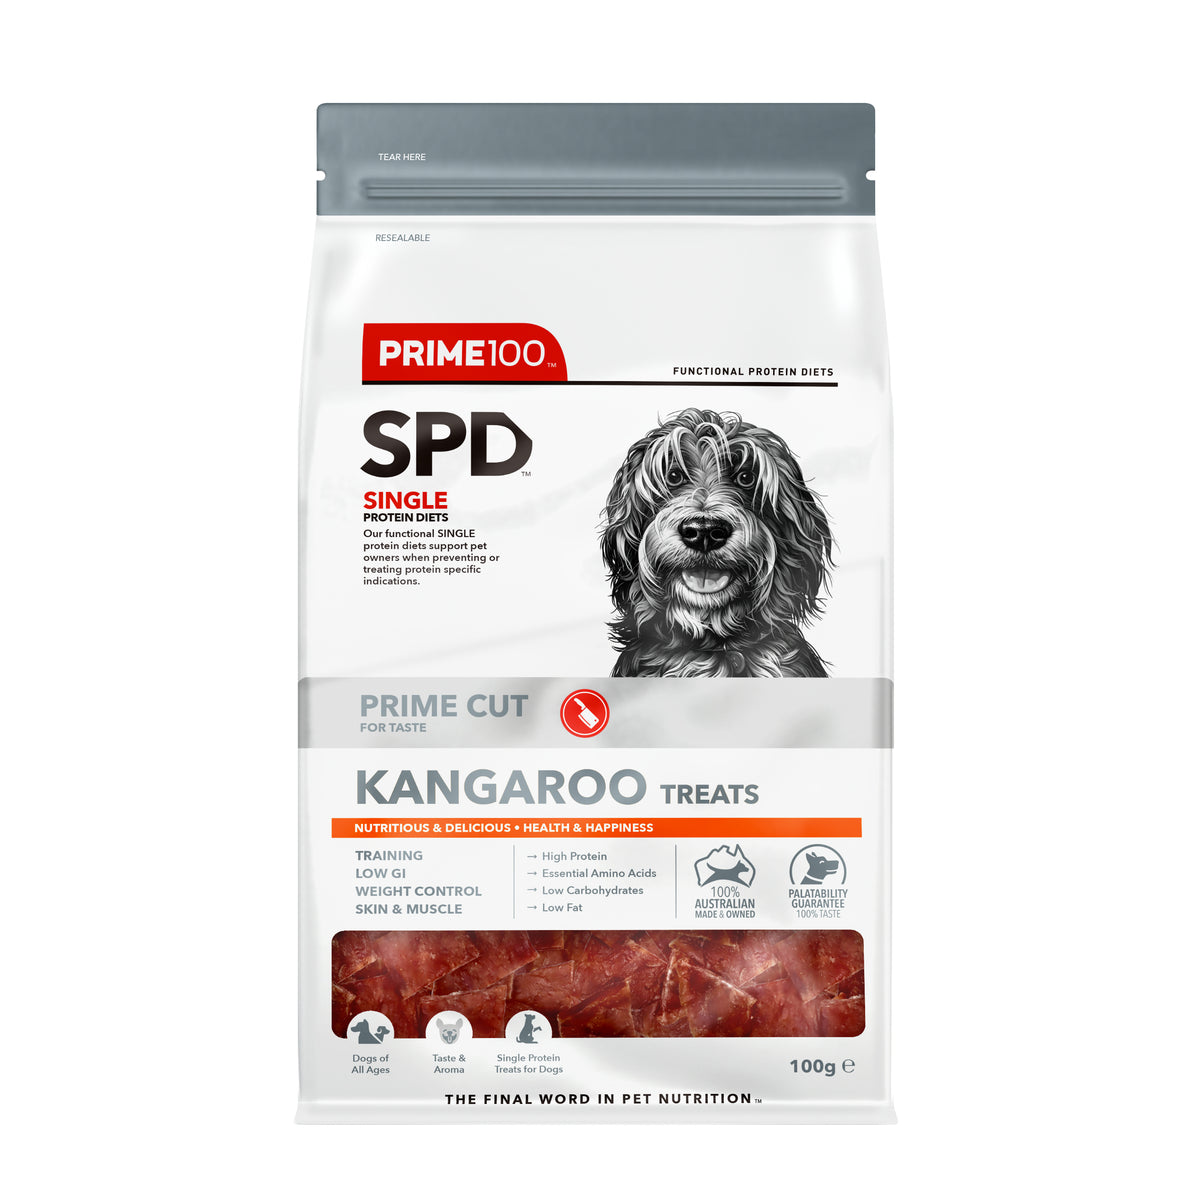 Prime100 SPD Prime Cut Kangaroo Treats 100g